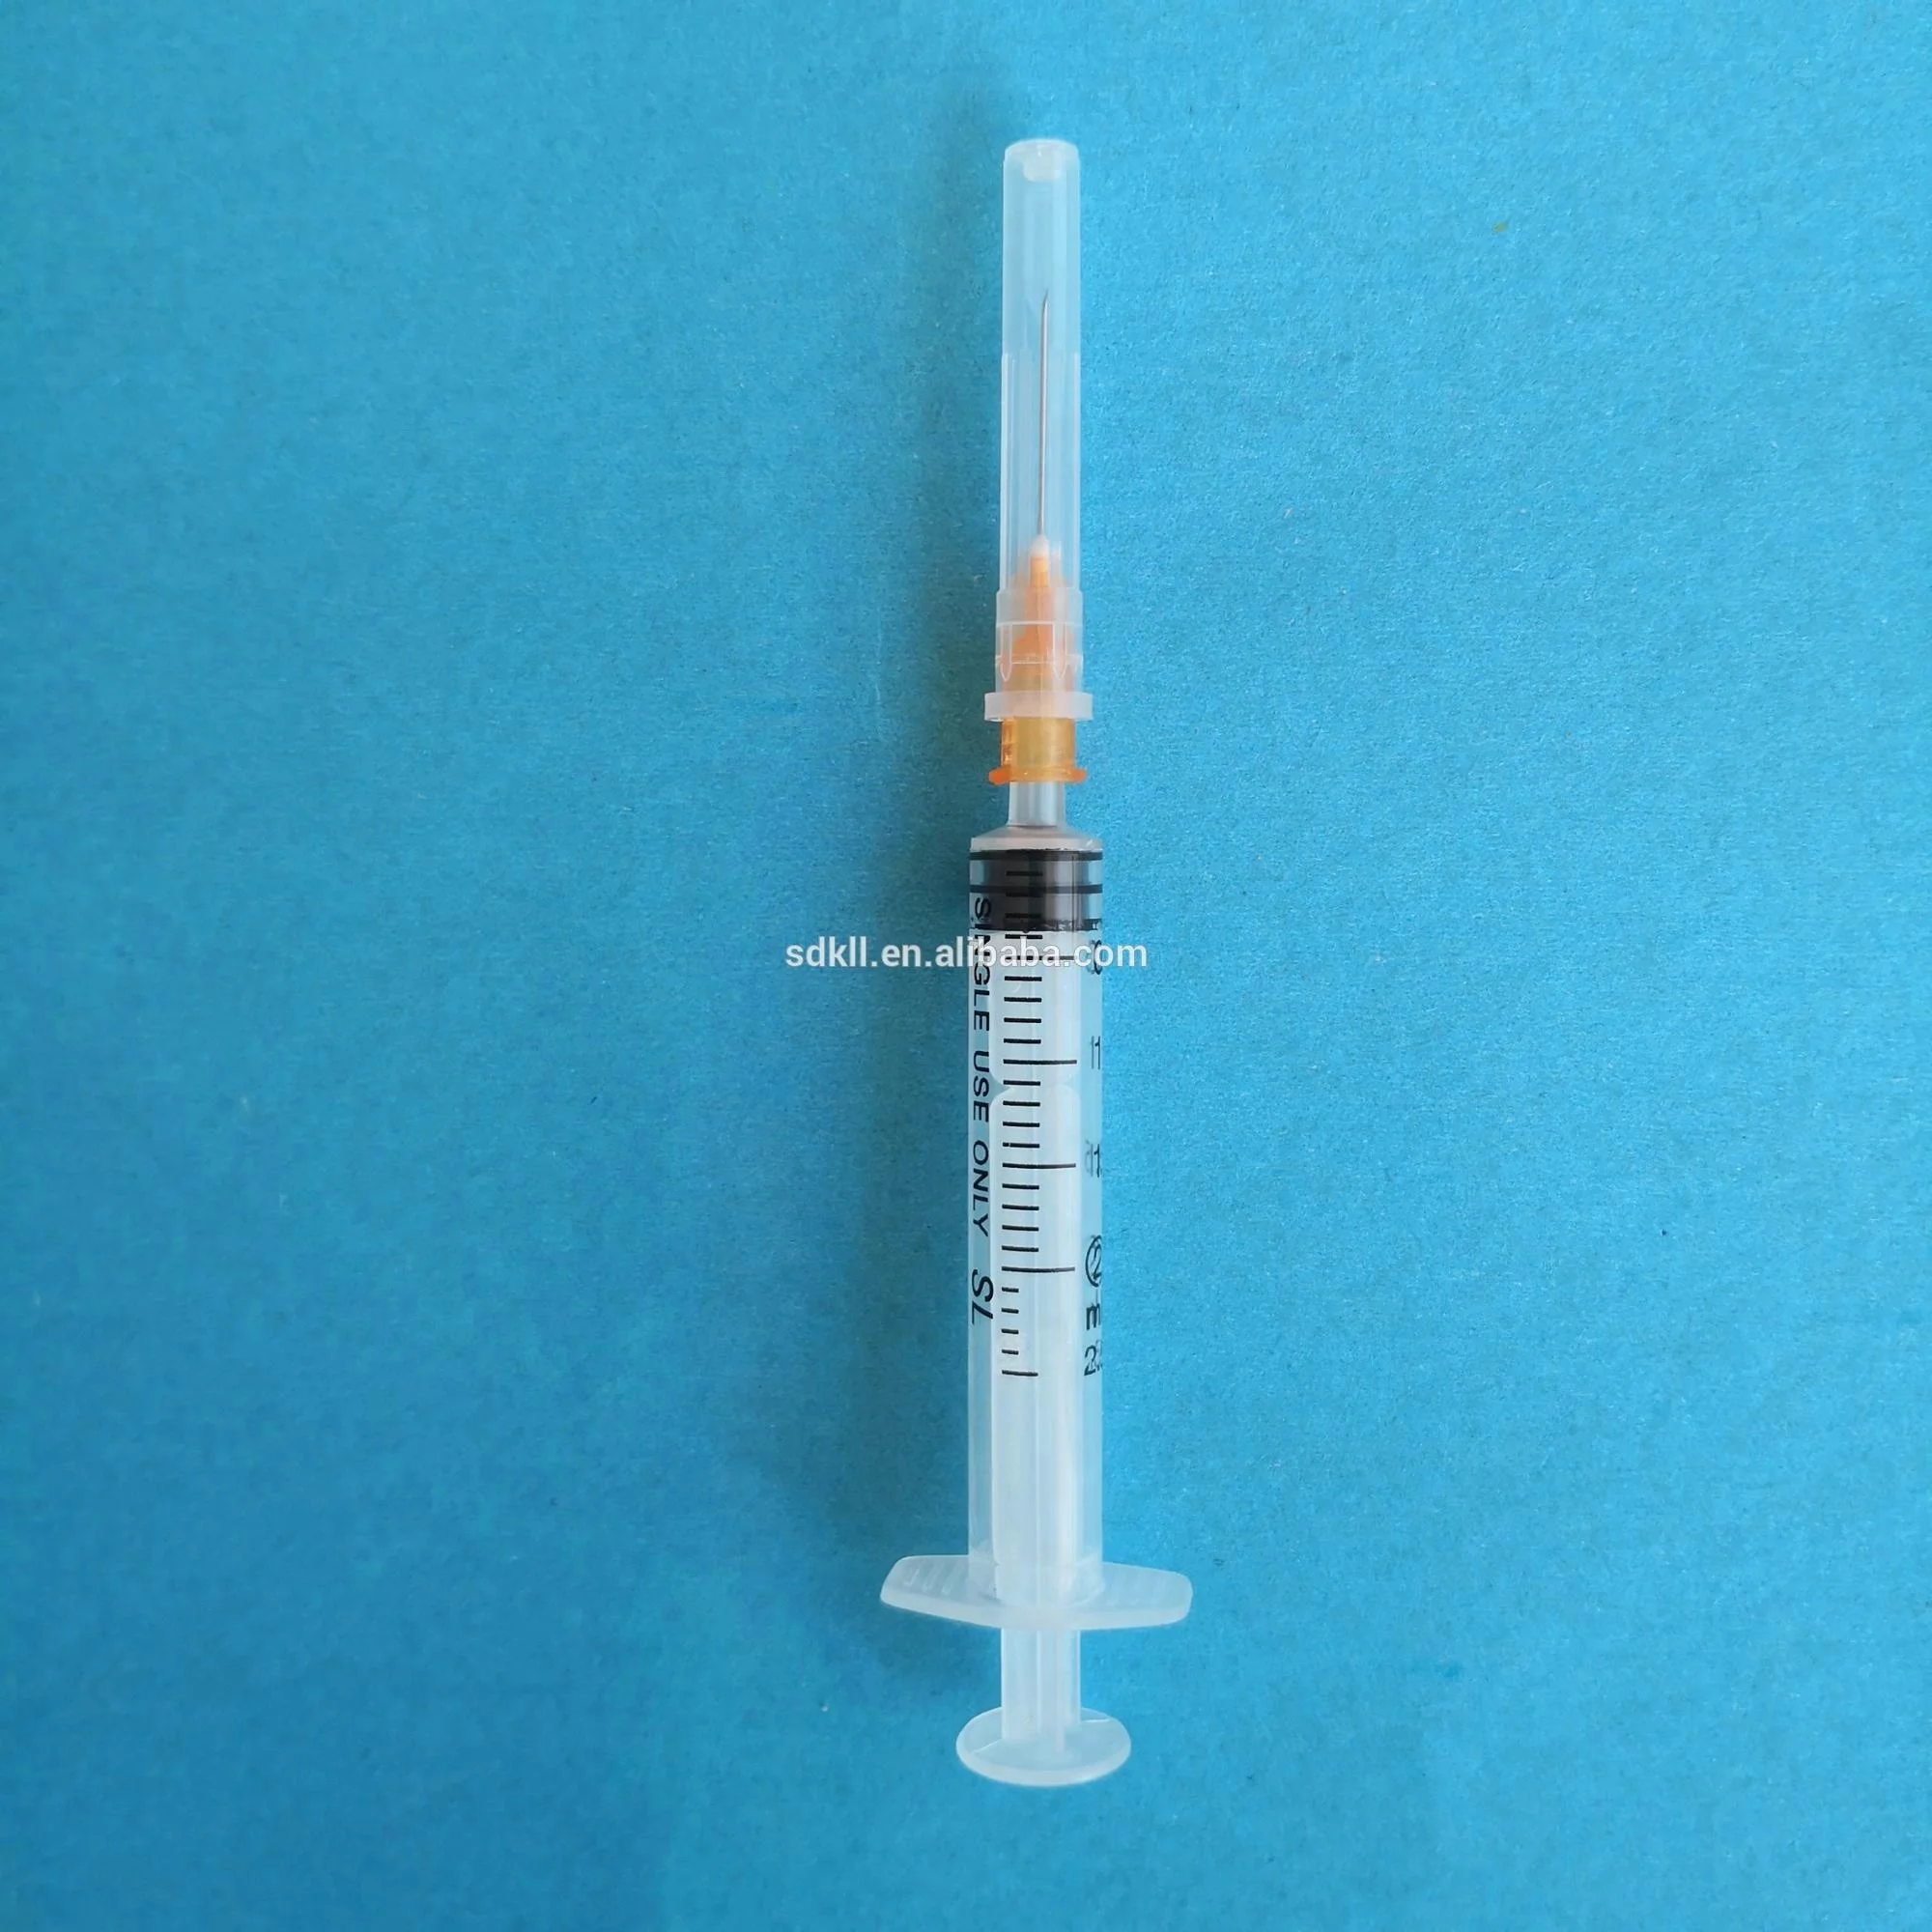 1毫升 luer 锁定注射器胰岛素注射器针头糖尿病注射器